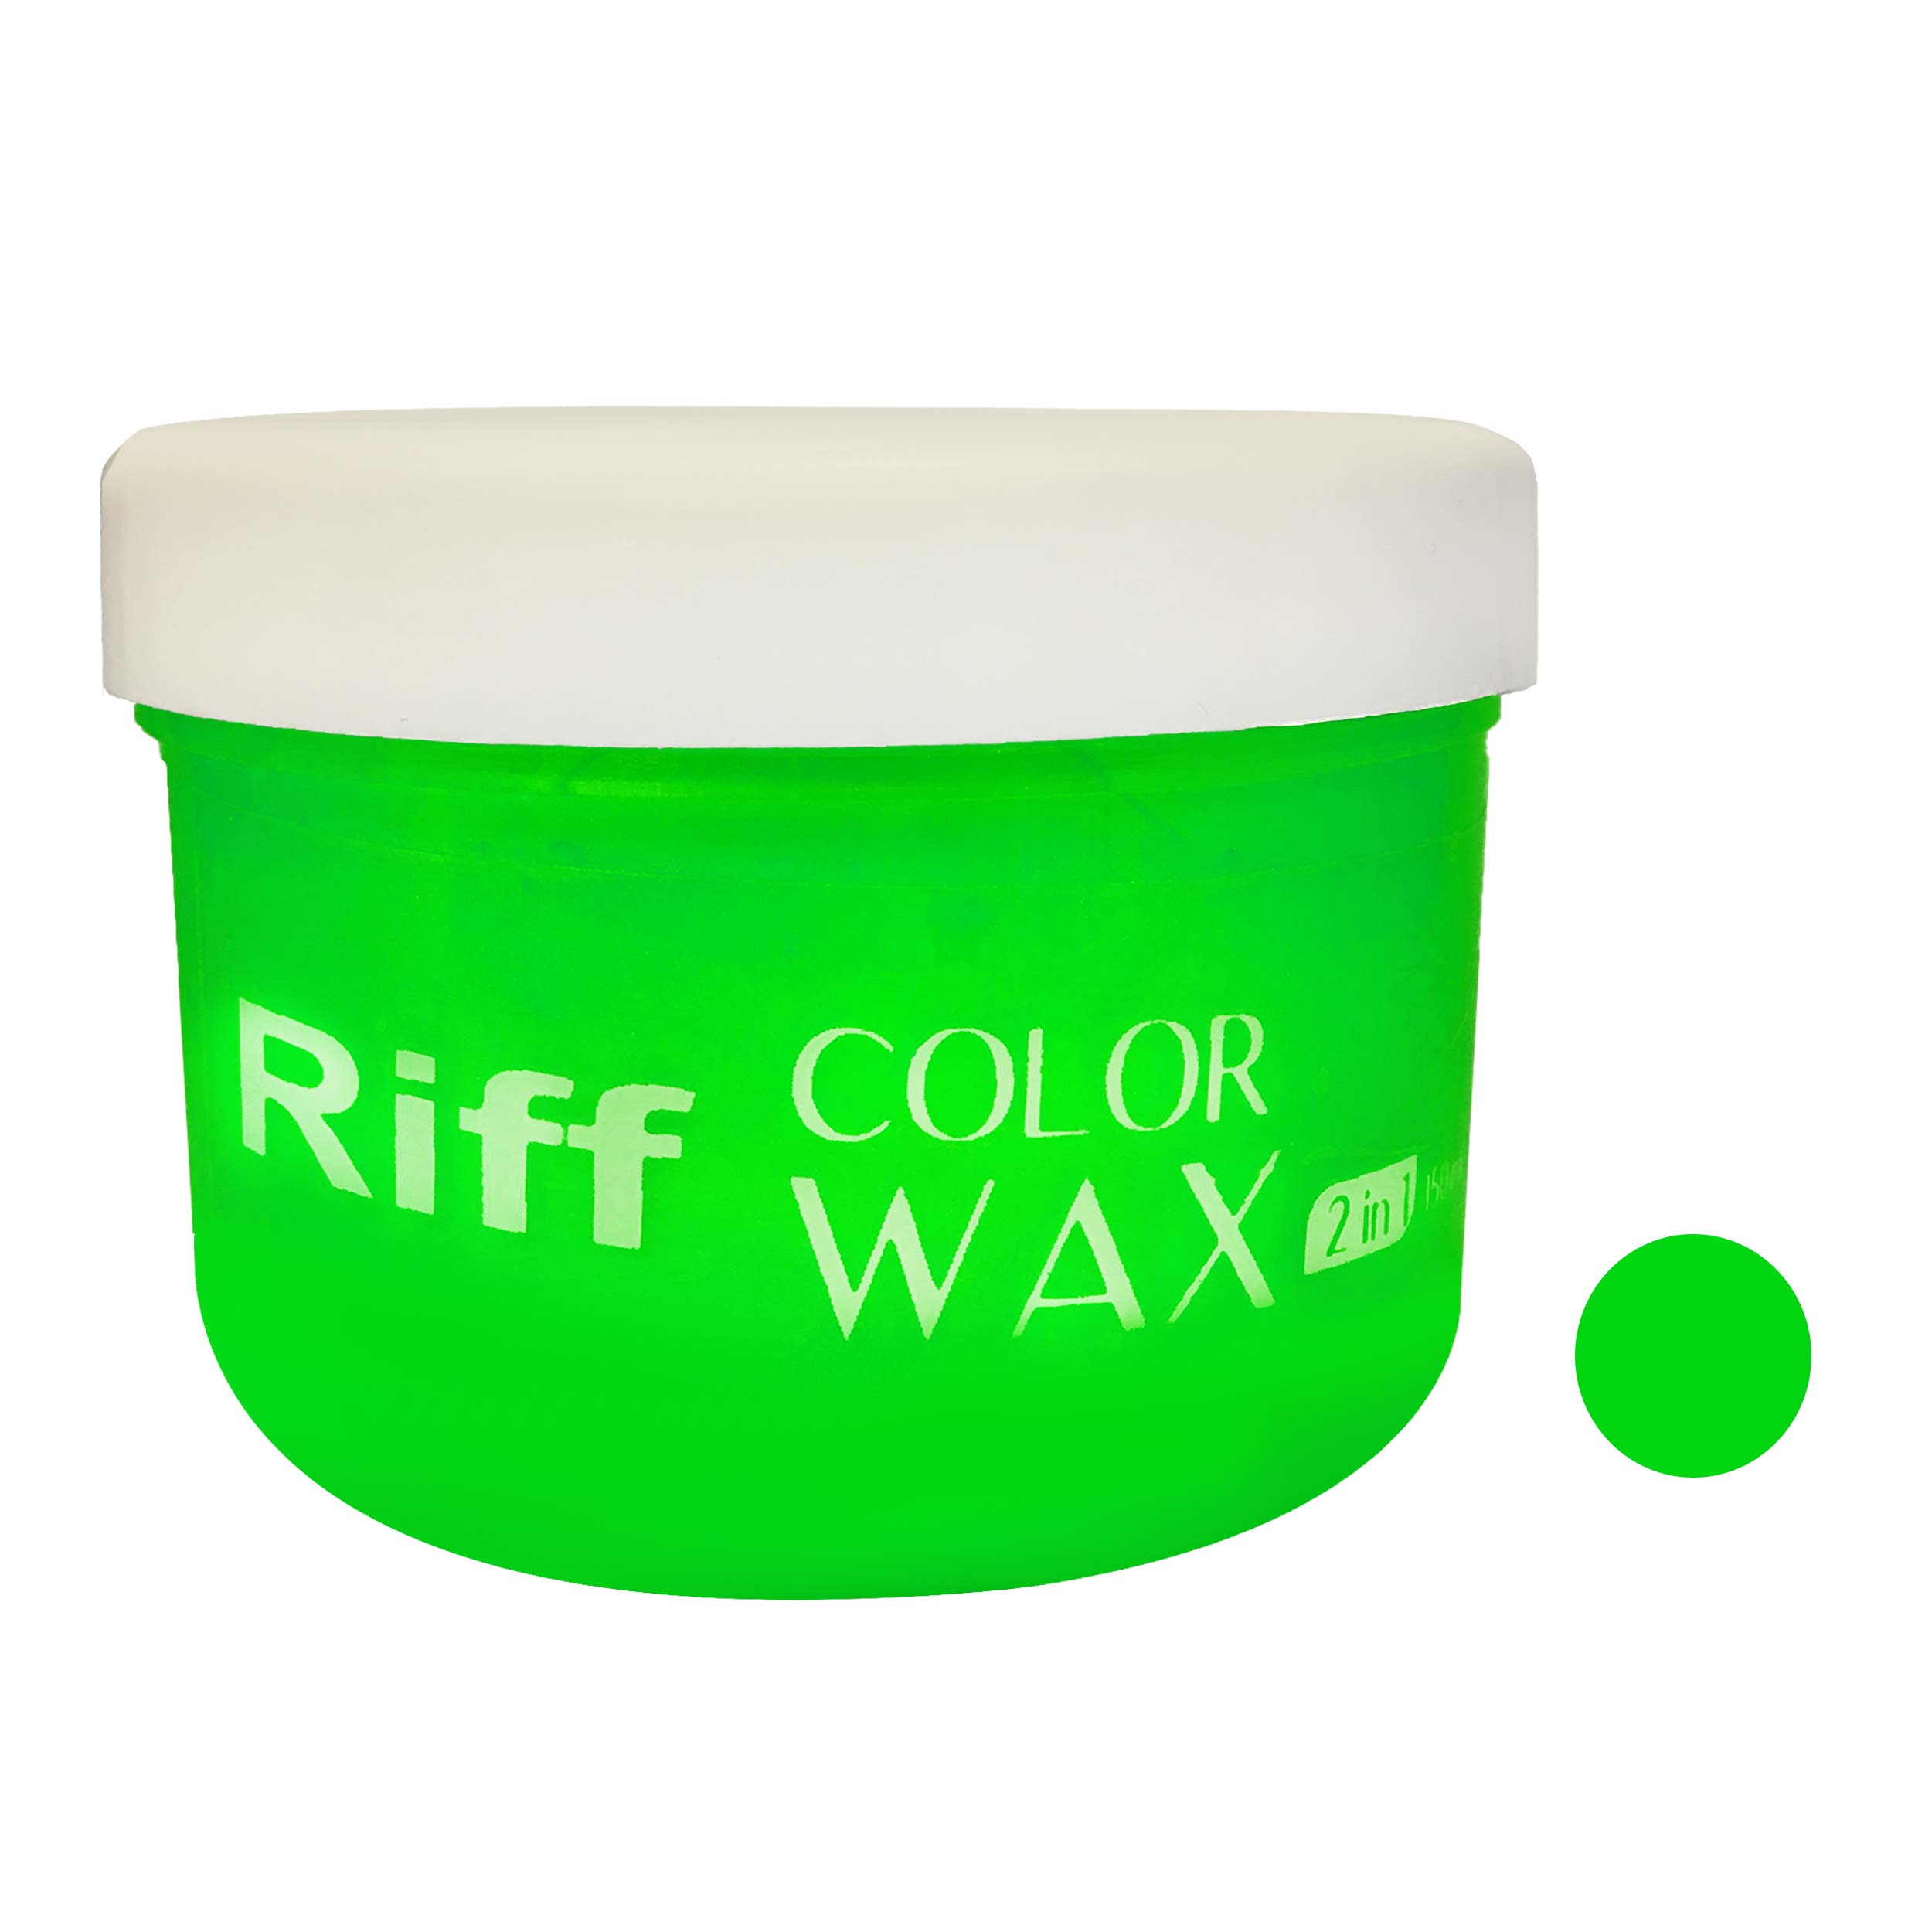  ژل رنگ مو ریف مدل 2442 حجم 150 میلی لیتر رنگ سبز فسفری